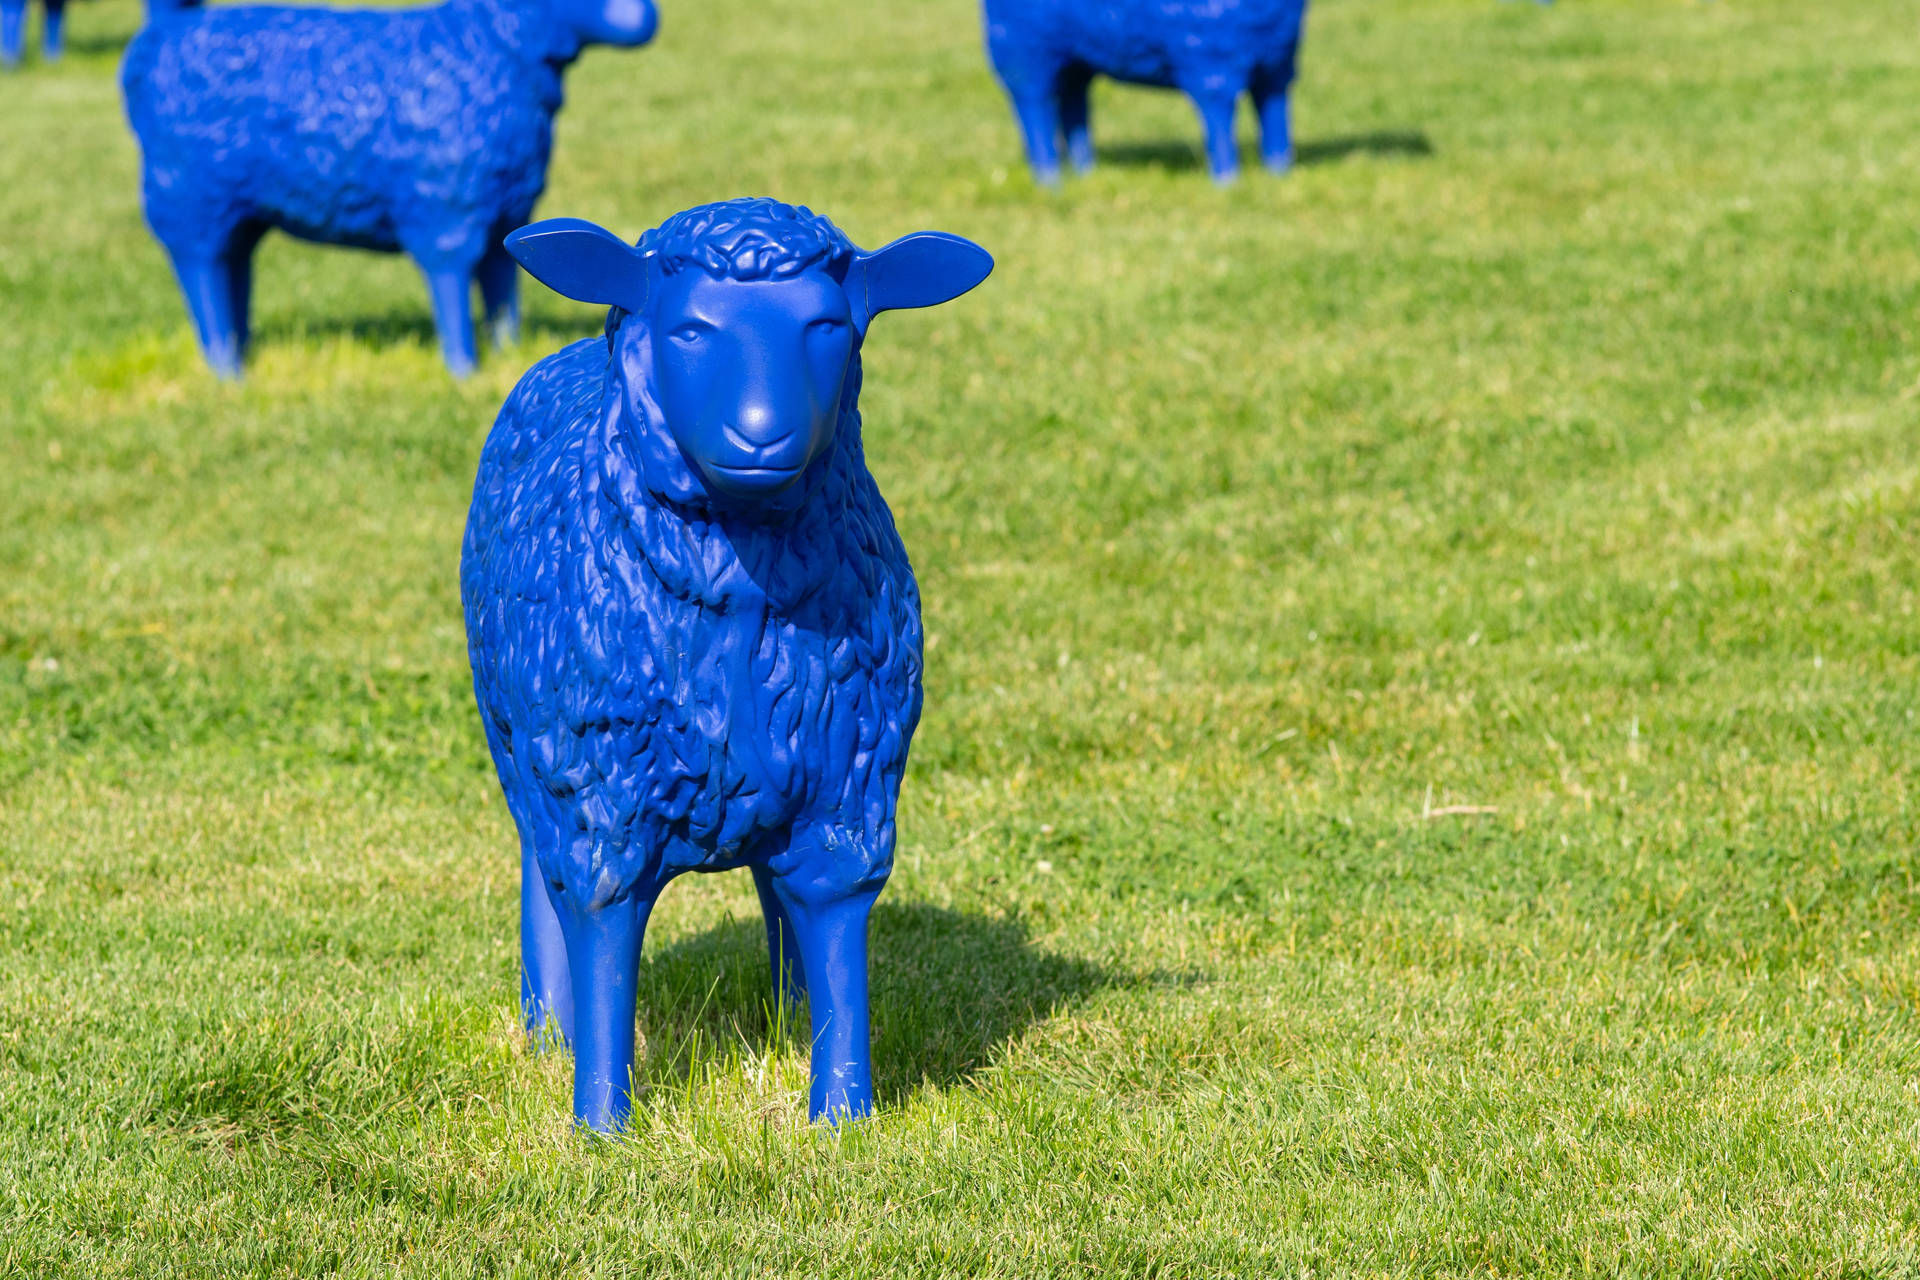 Cute Blue Sheep Statue Background